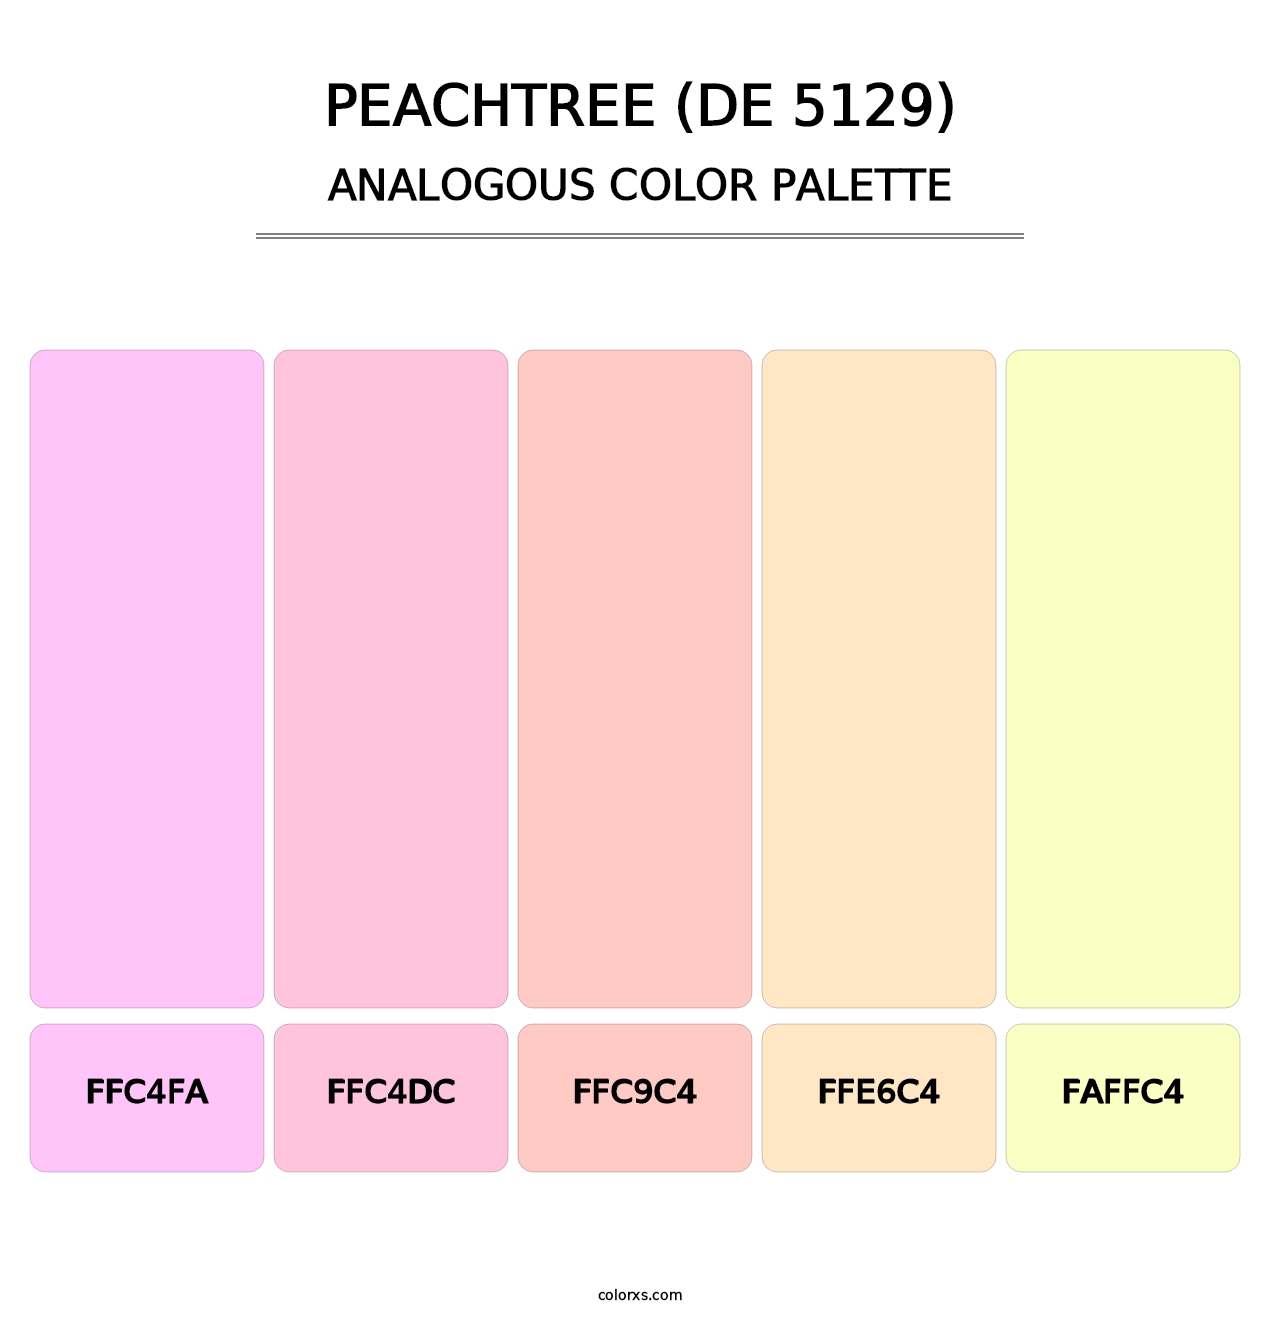 Peachtree (DE 5129) - Analogous Color Palette